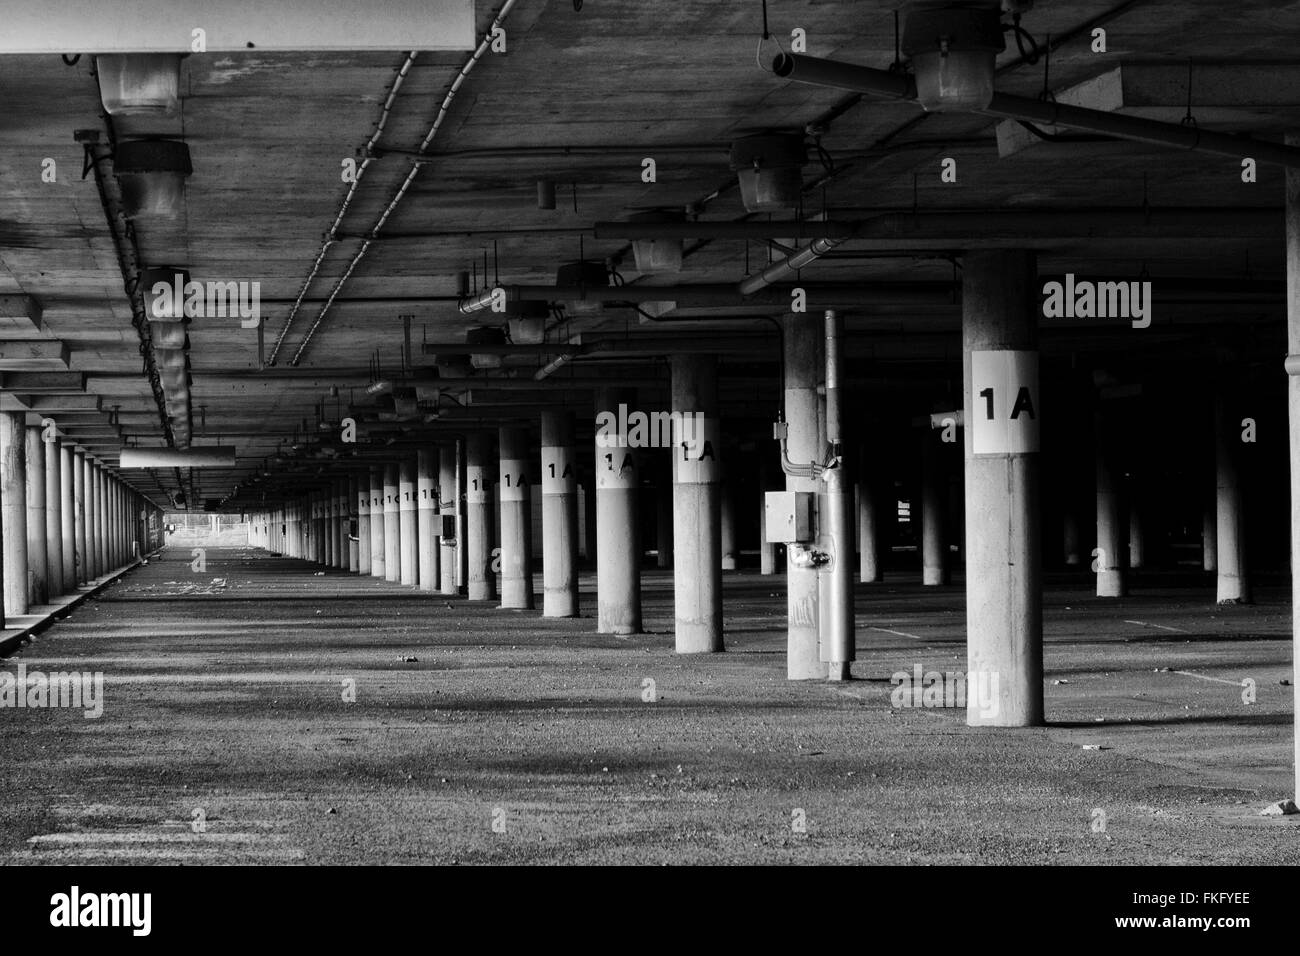 Un'immagine in bianco e nero del parcheggio di livello inferiore abbandonato all'aeroporto Mirabel (CYMX) di Mirabel, Quebec, Canada. Foto Stock